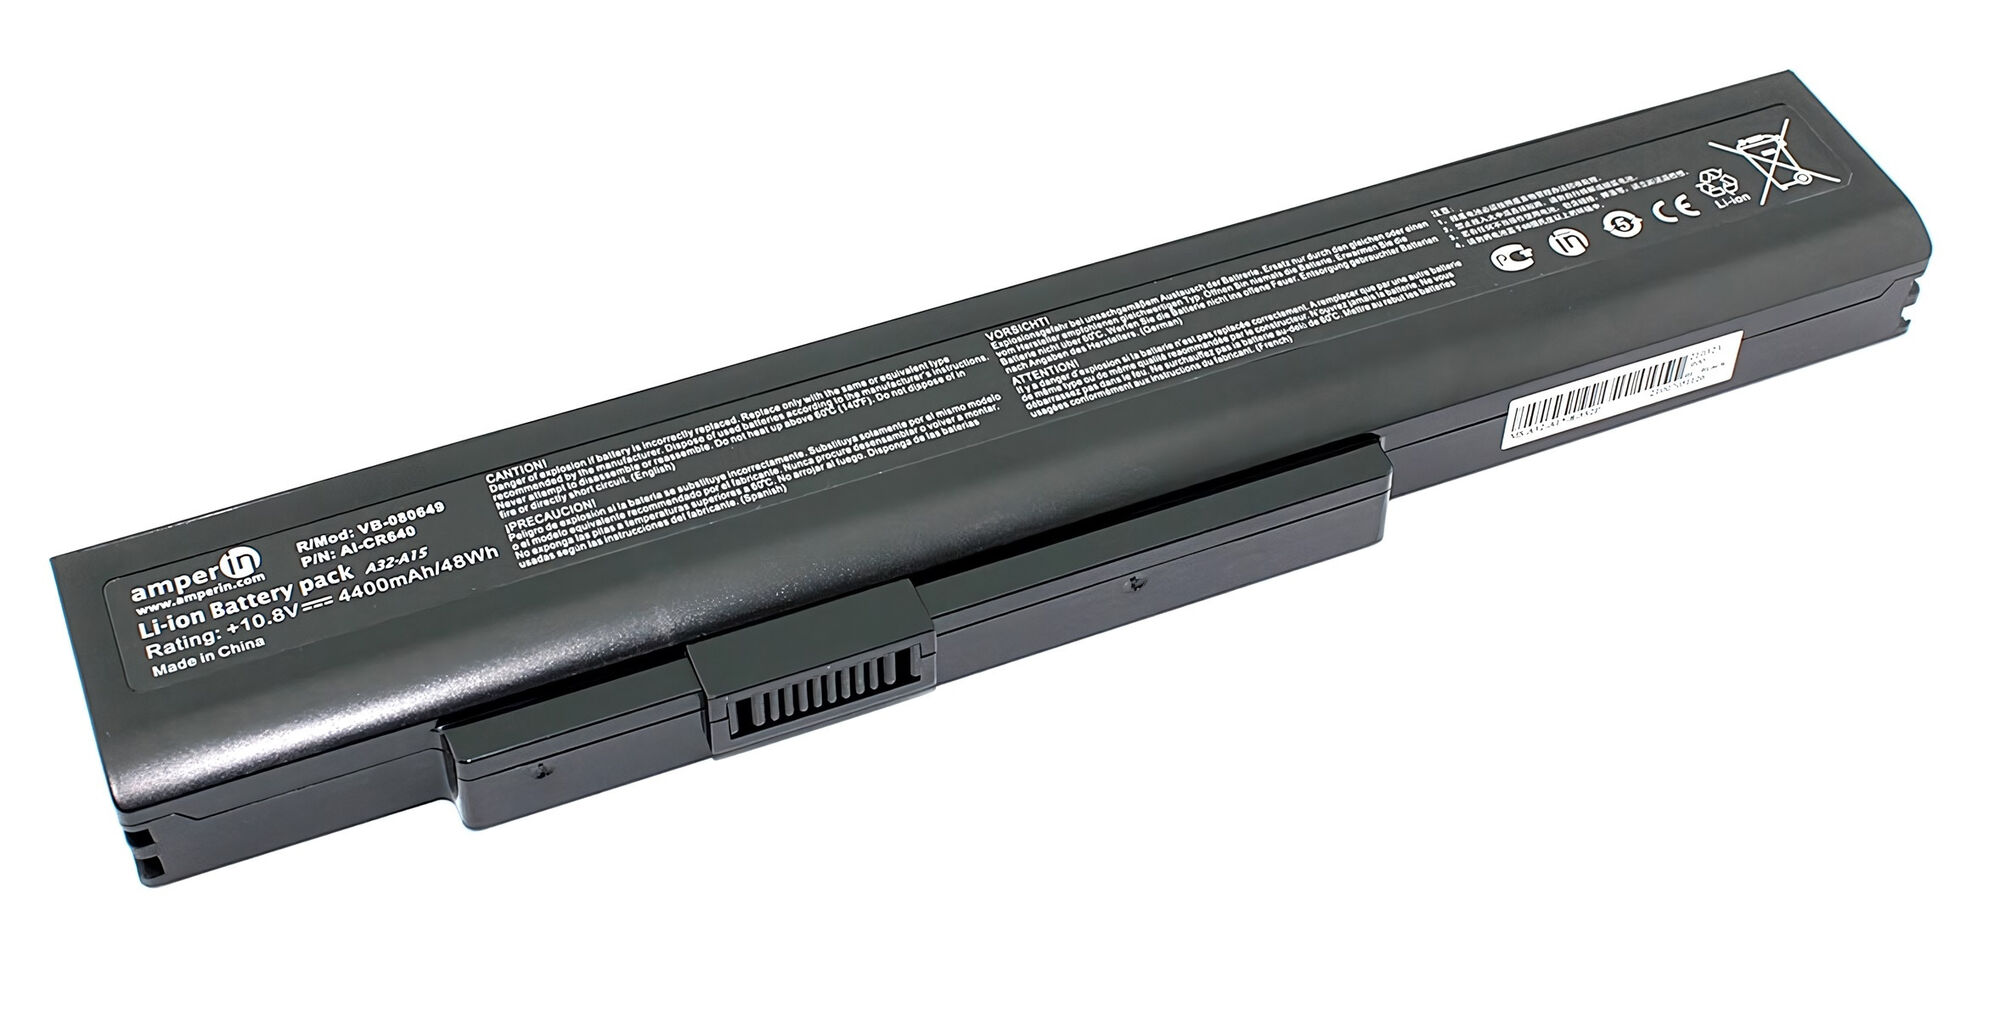 Аккумулятор для MSI CX640 A6400 CR640 (10.8V 4400mAh) p/n: A32-A15, A41-A15, A42-A15